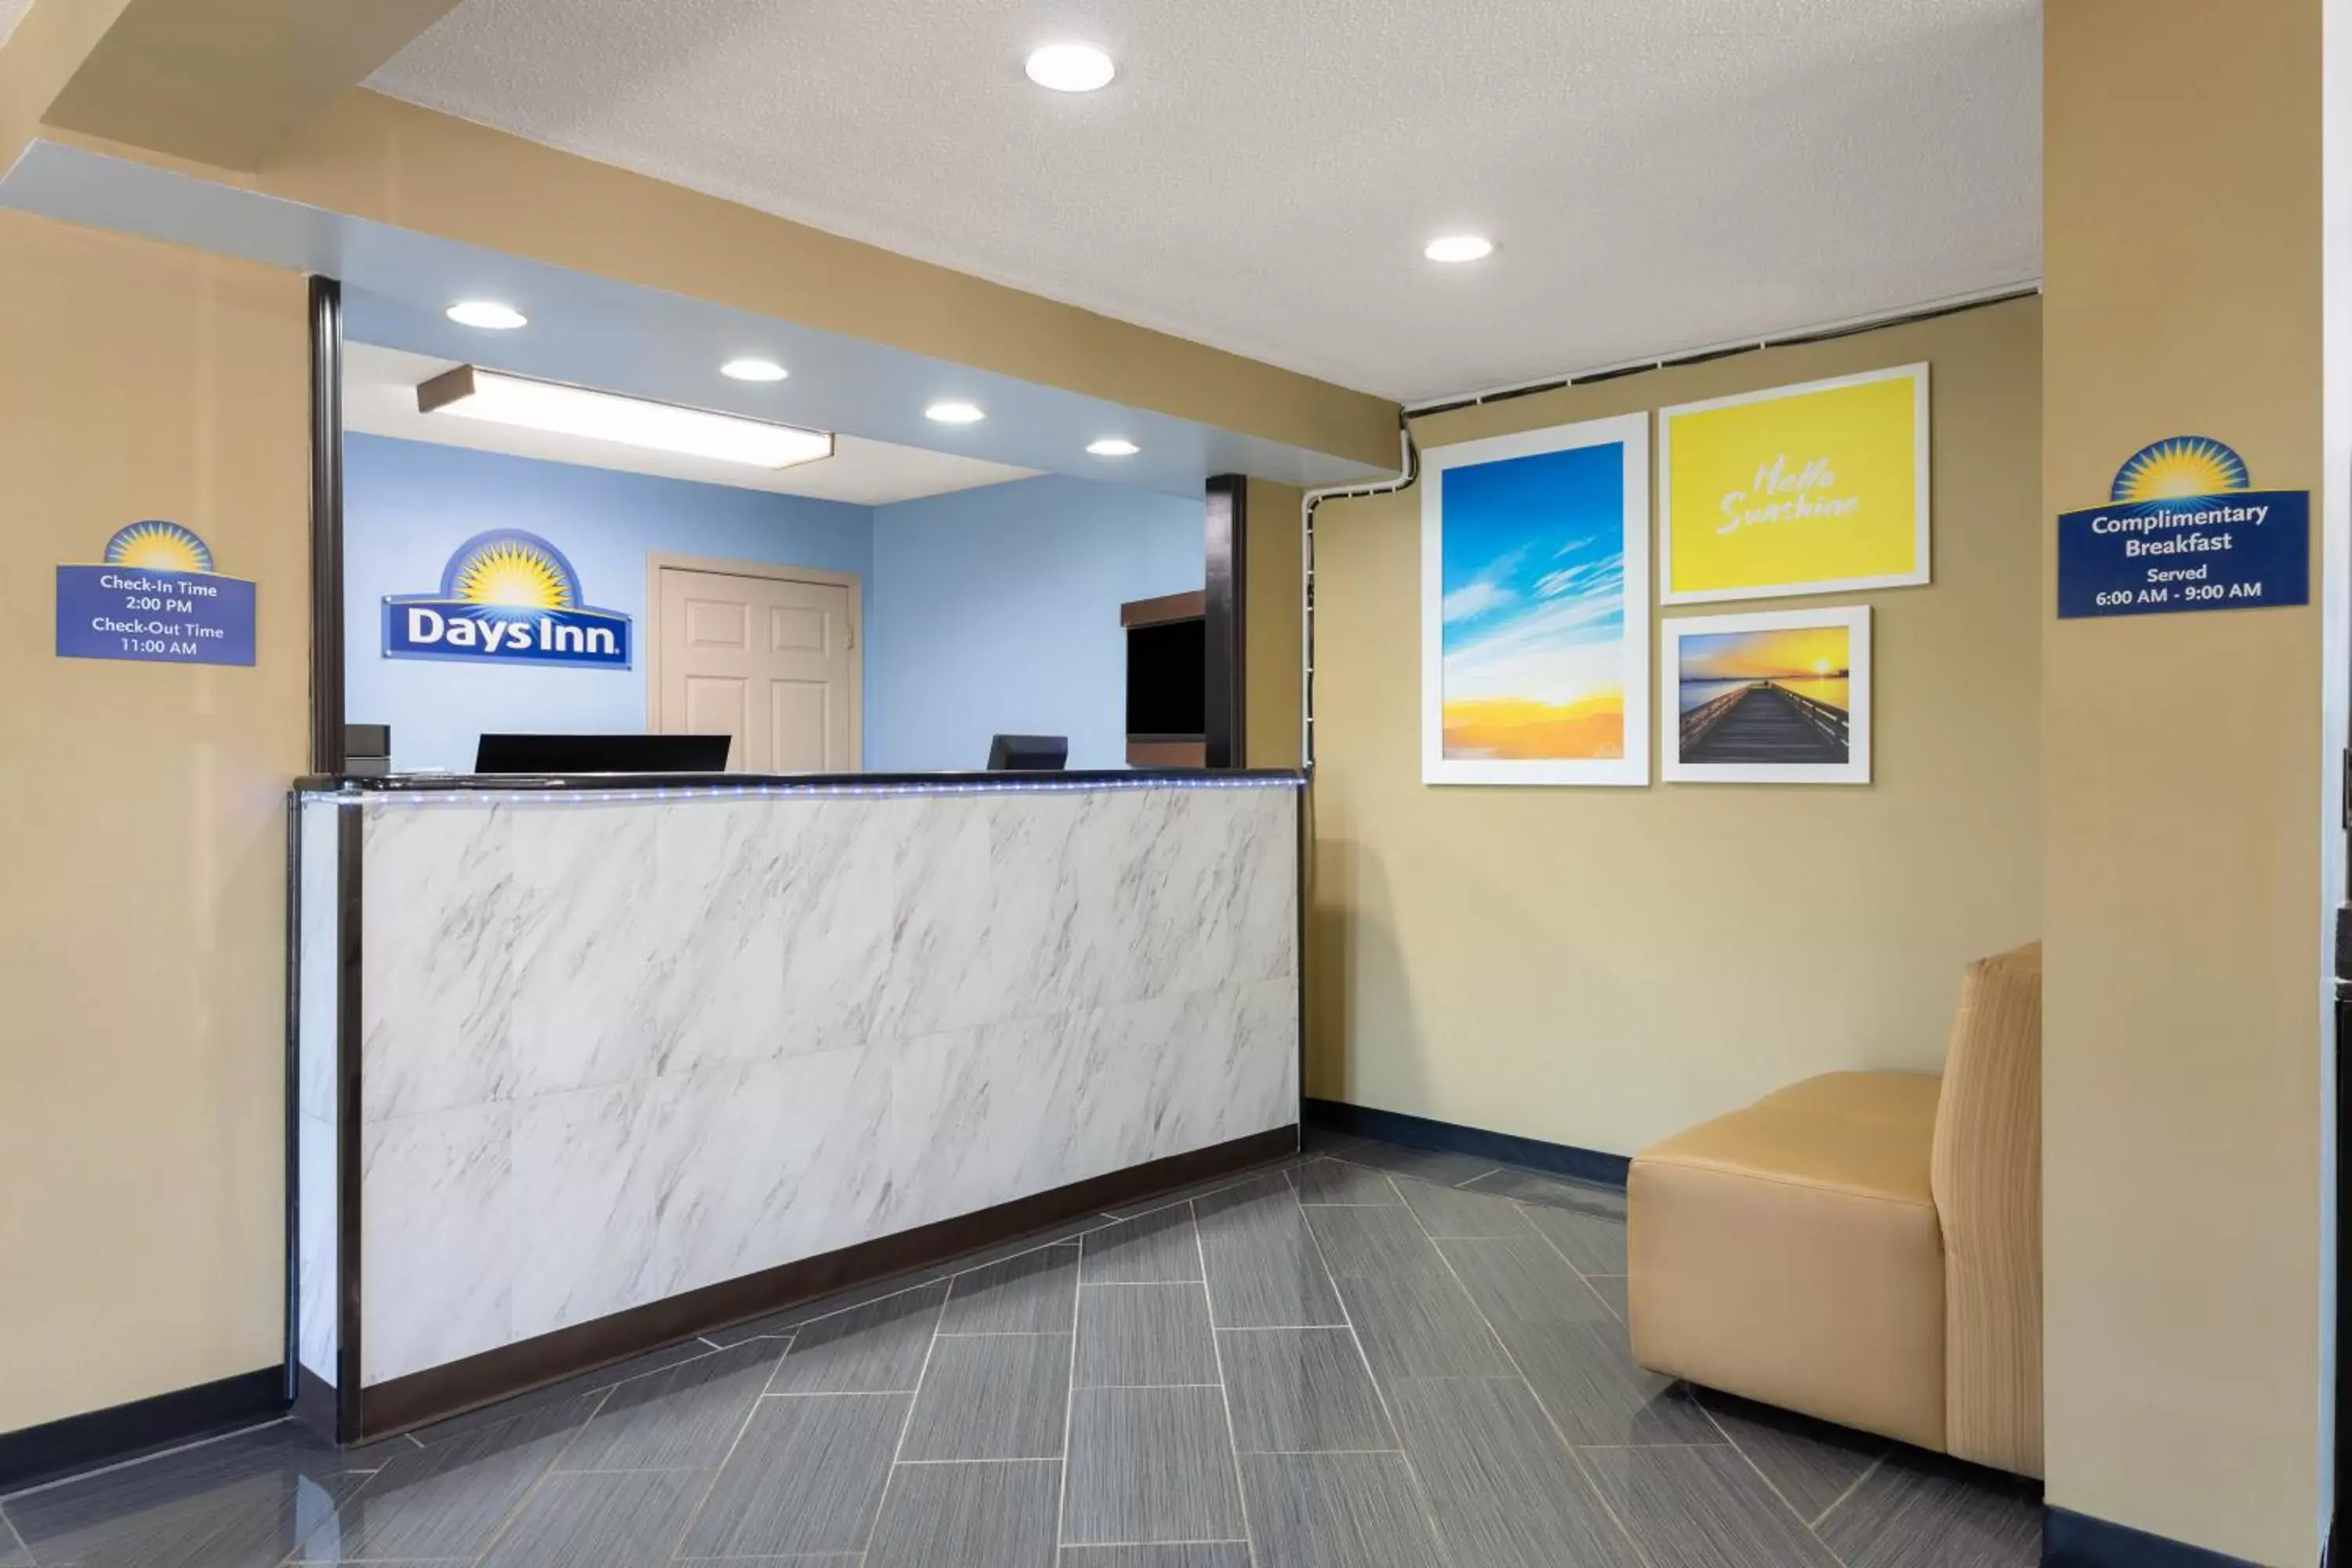 Lobby or reception, Lobby/Reception in Days Inn by Wyndham Greensboro Airport